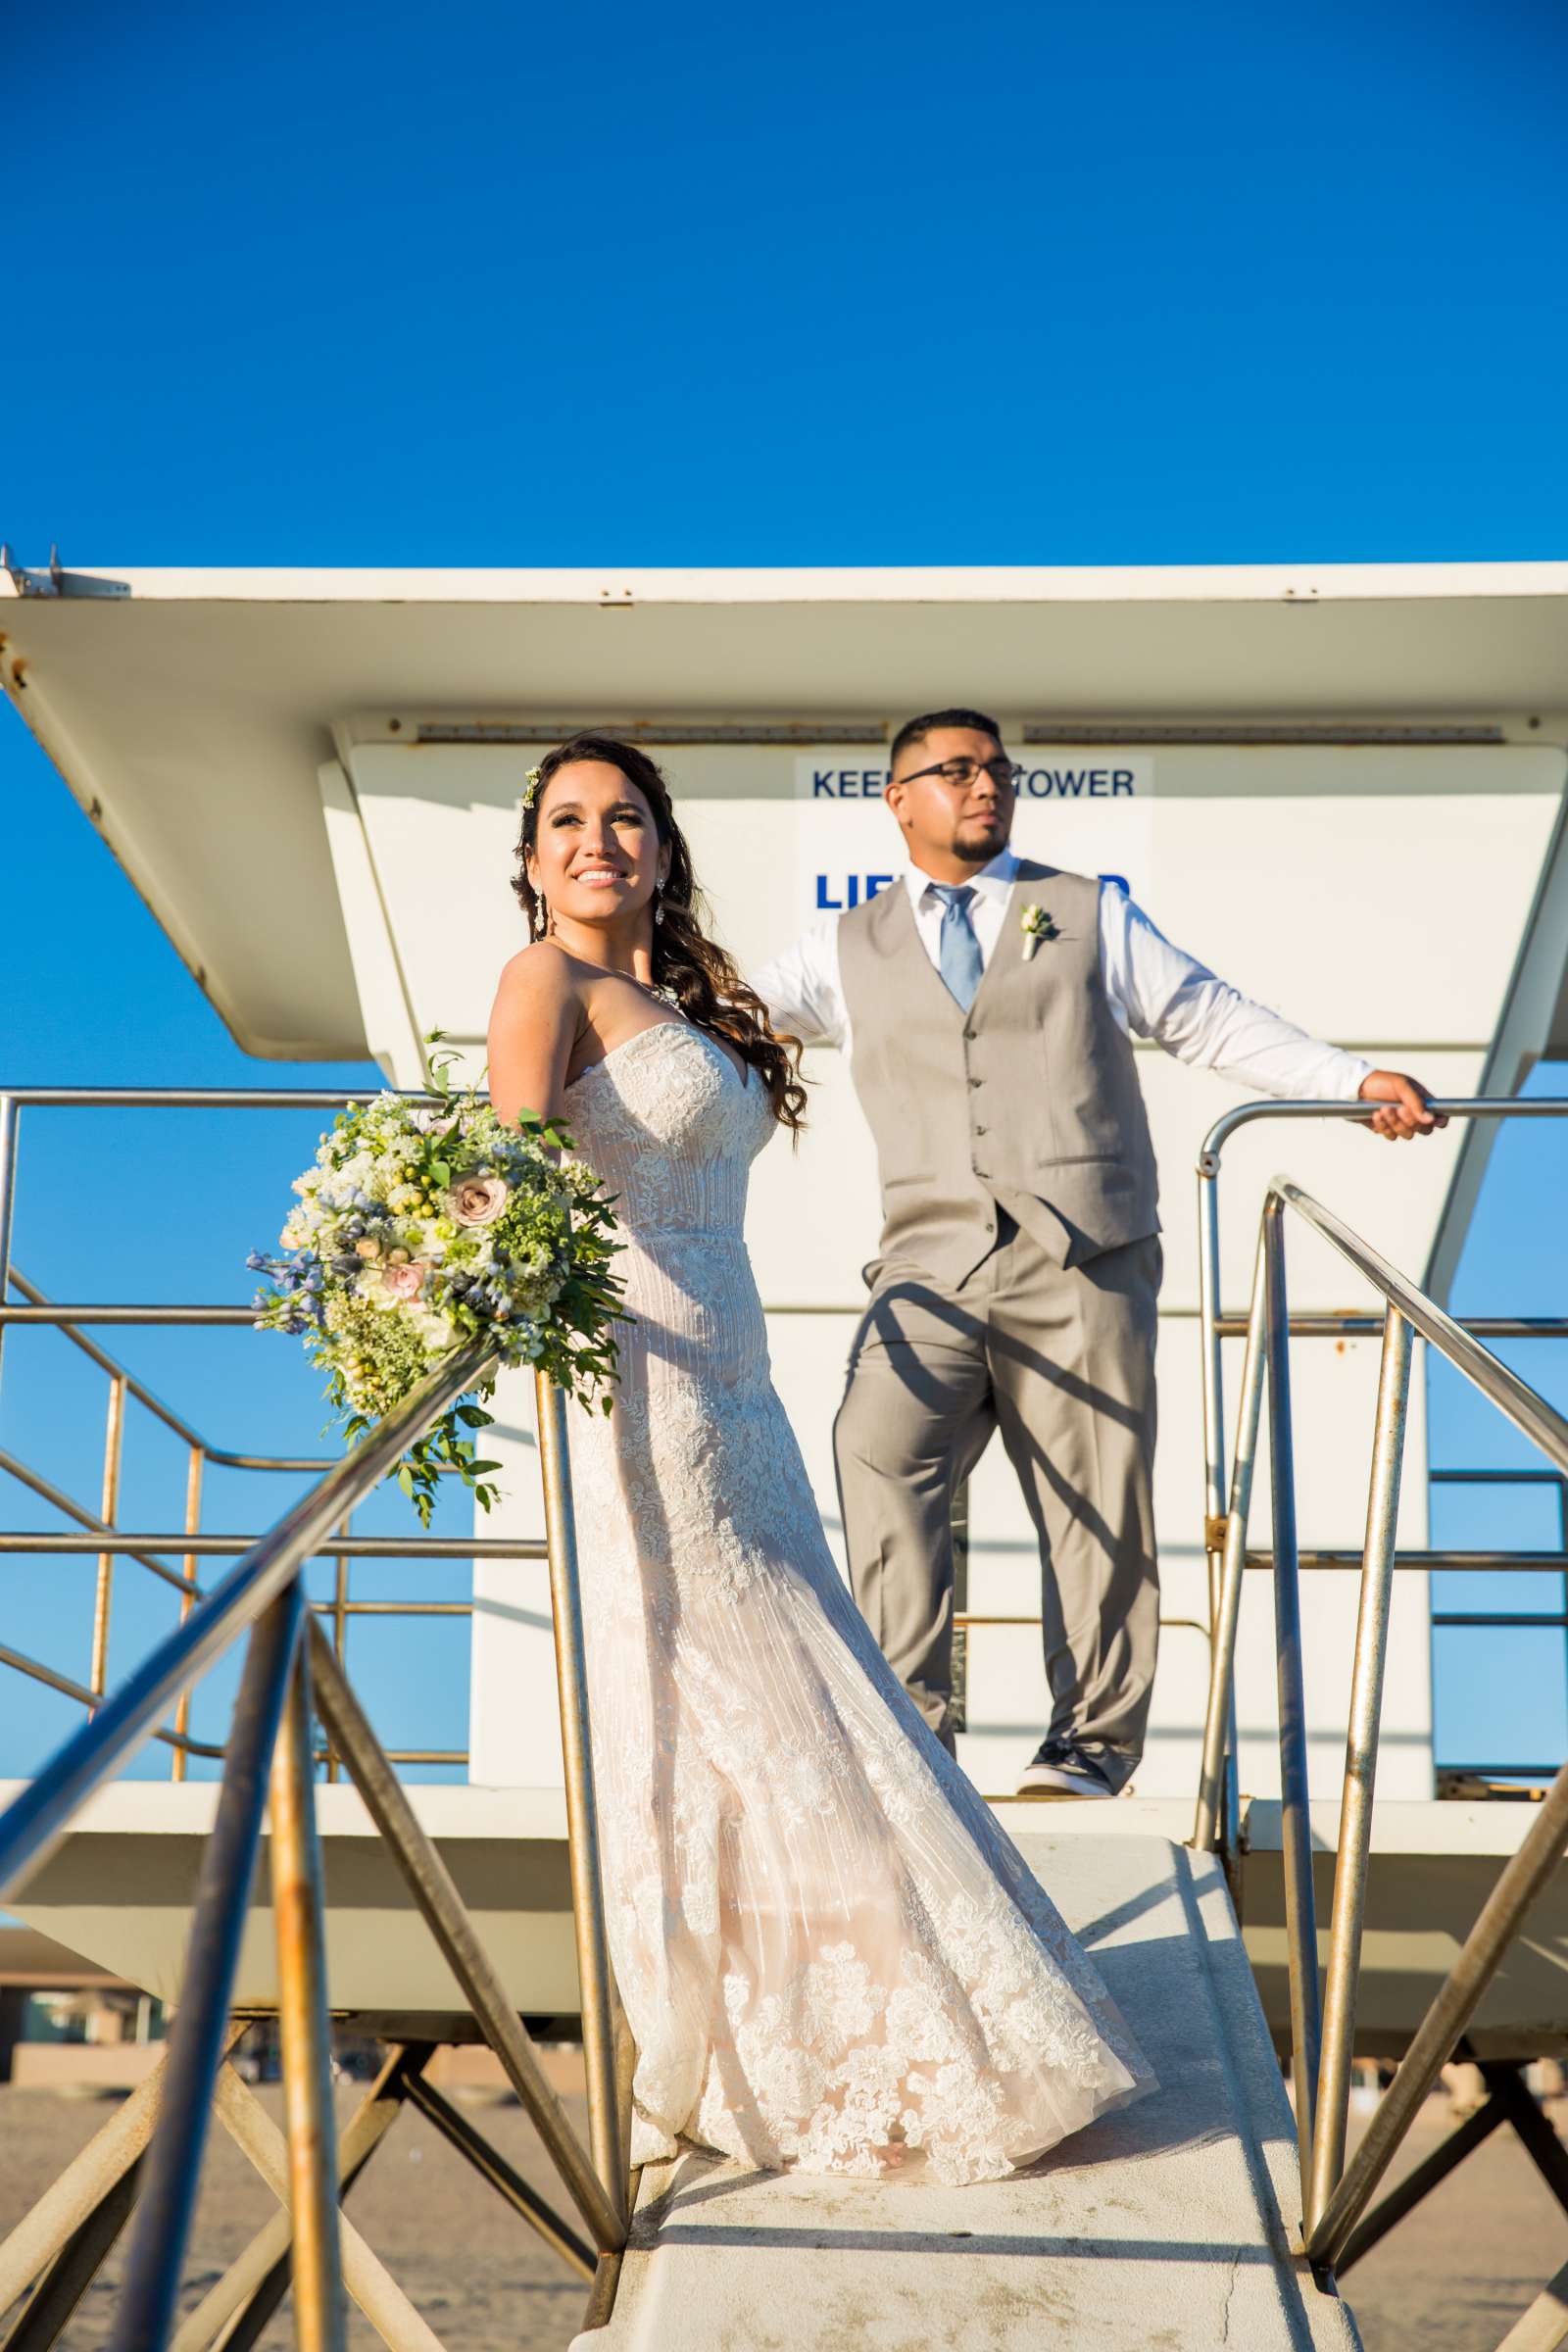 Del Mar Beach Resort Wedding coordinated by La Casa Del Mar, Alisa and Carlos Wedding Photo #380841 by True Photography